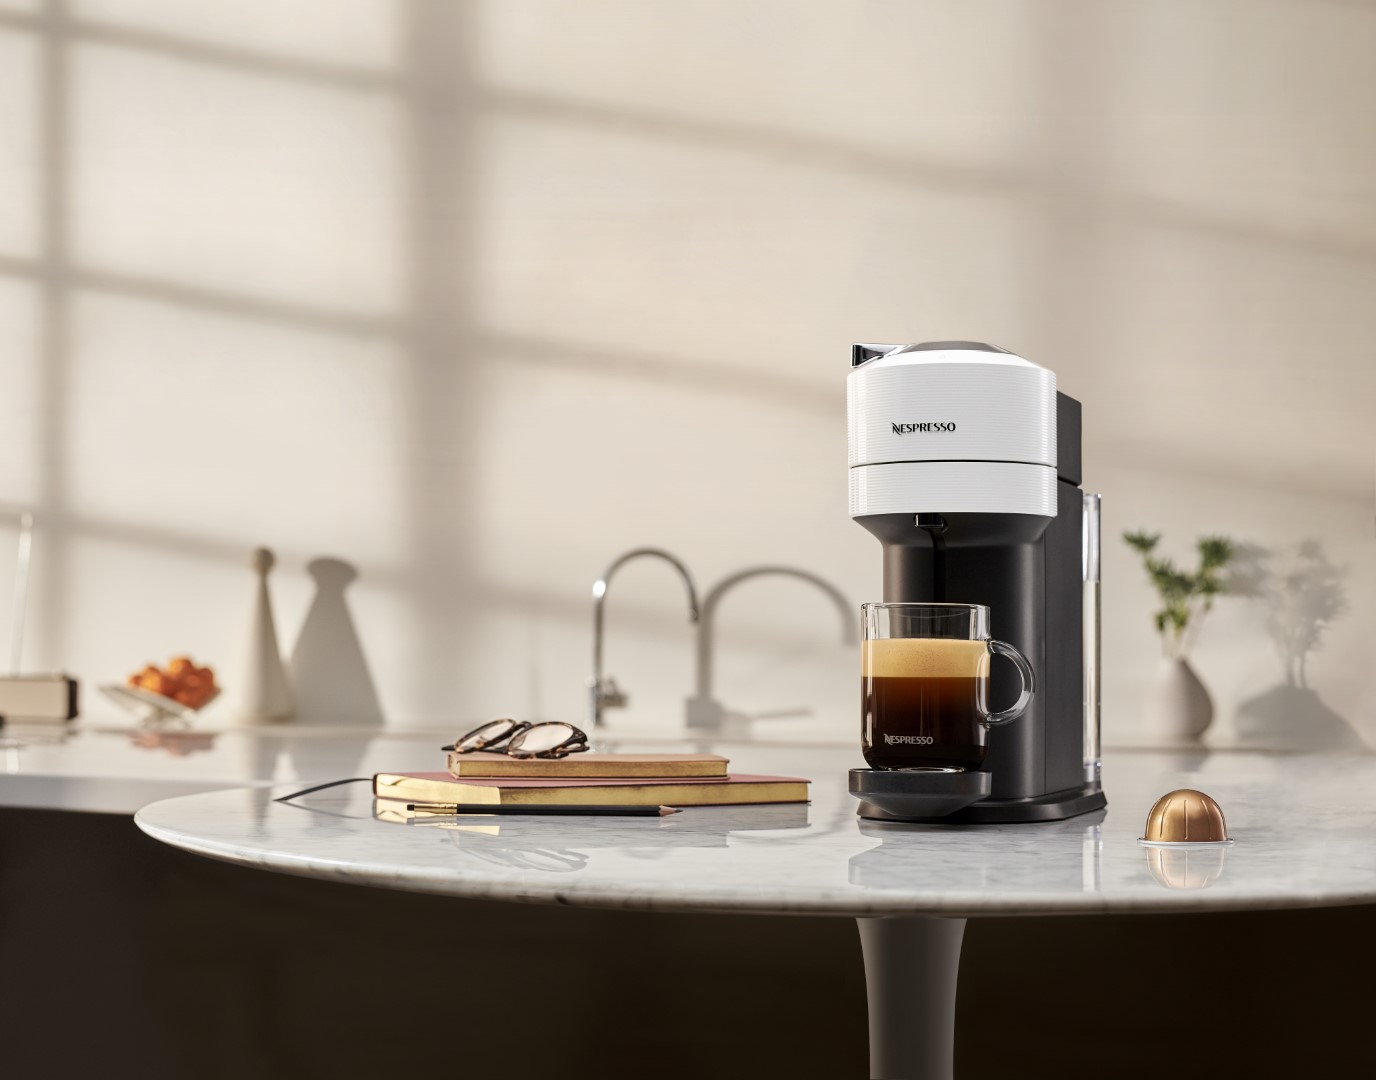 , NESPRESSO VERTUO: Νέο σύστημα καφέ για απόλαυση σε μικρή και μεγάλη κούπα